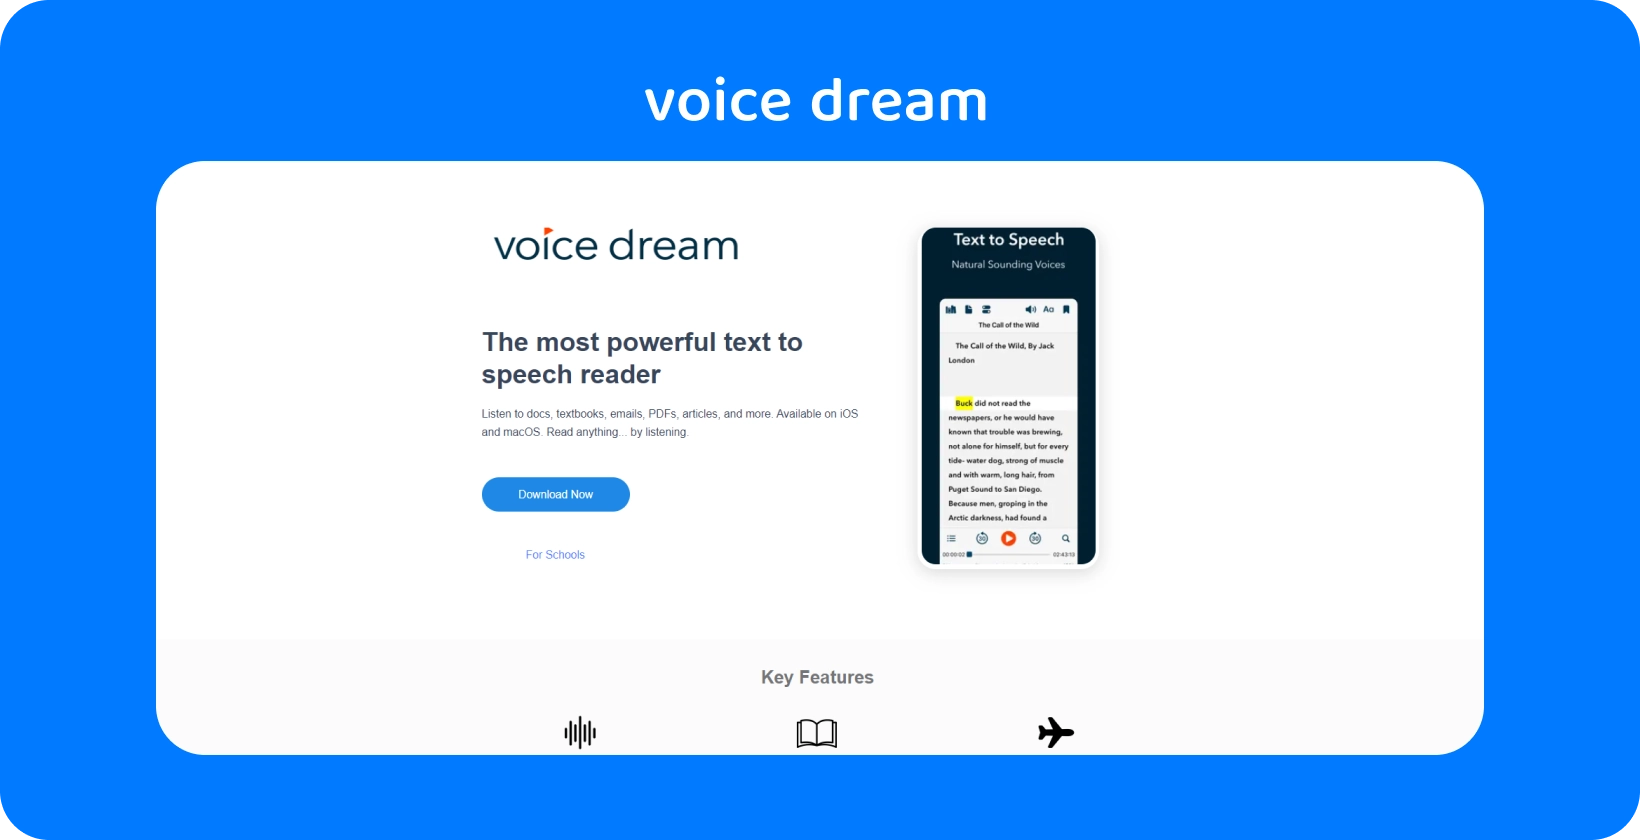 تعرض واجهة تطبيق Voice Dream قارئا قويا لتحويل النص إلى كلام للعديد من المستندات على الأجهزة المحمولة.